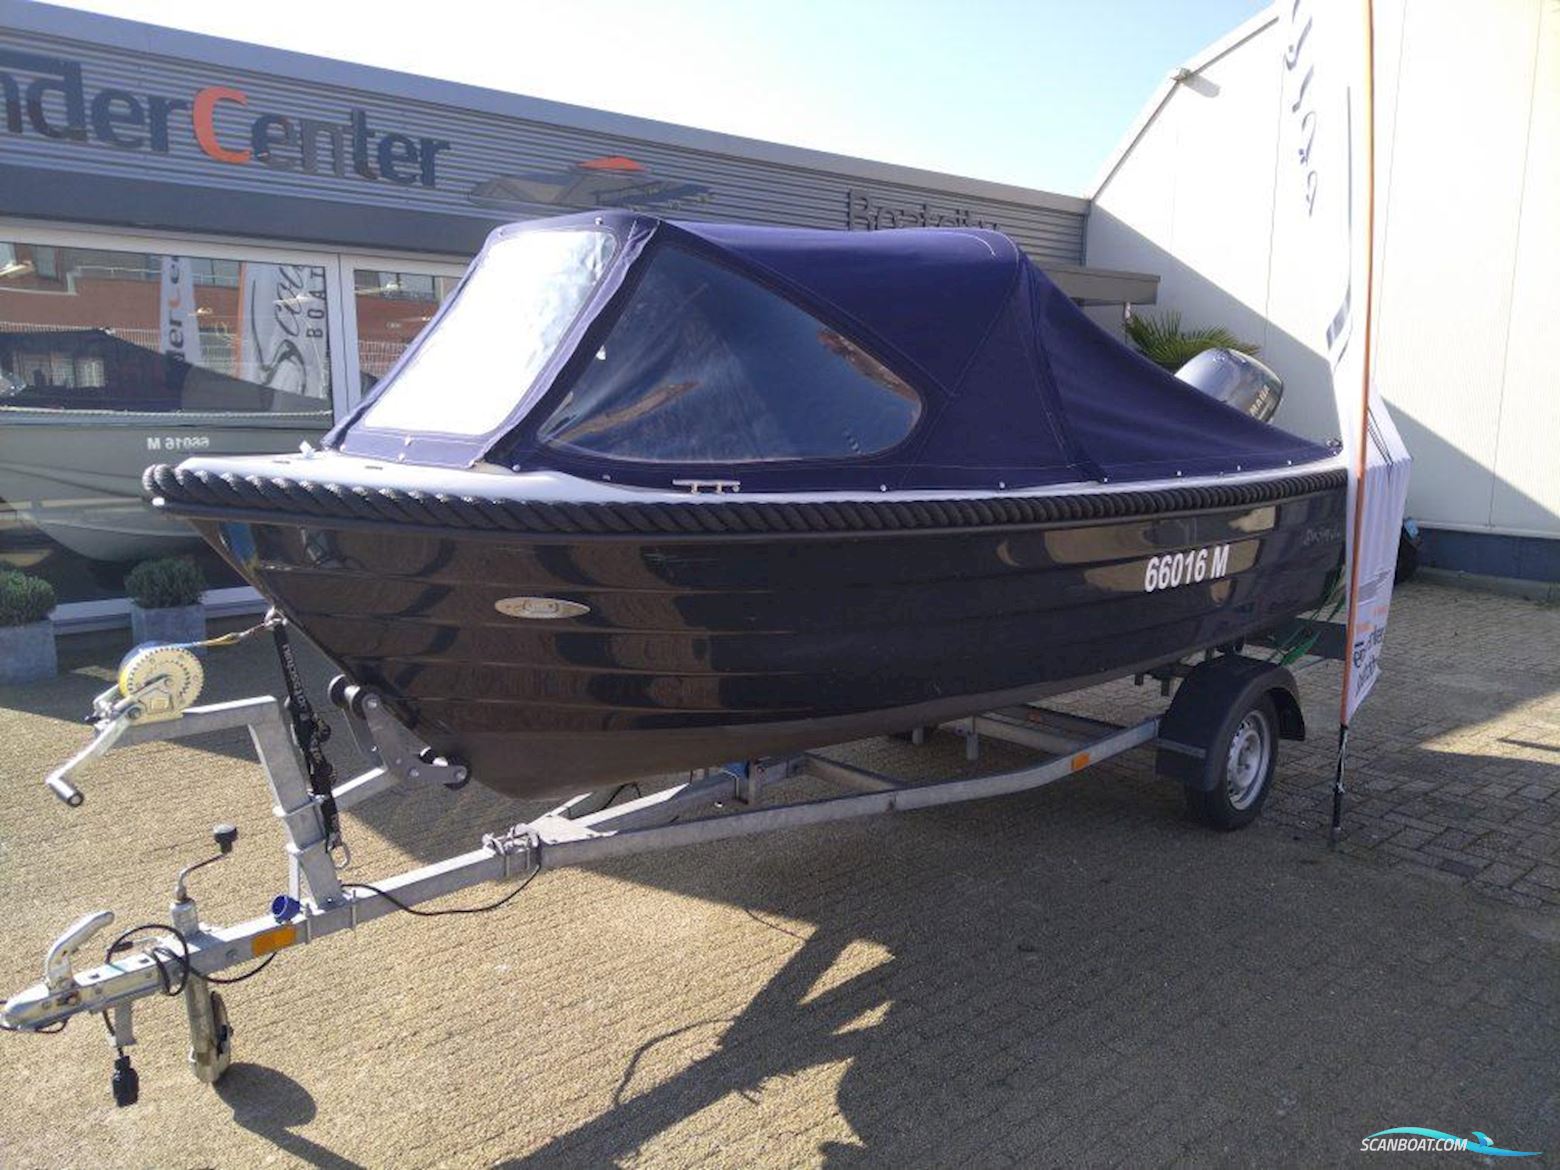 Blue Sloep 480XL Motor boat 2013, with Yamaha engine, The Netherlands